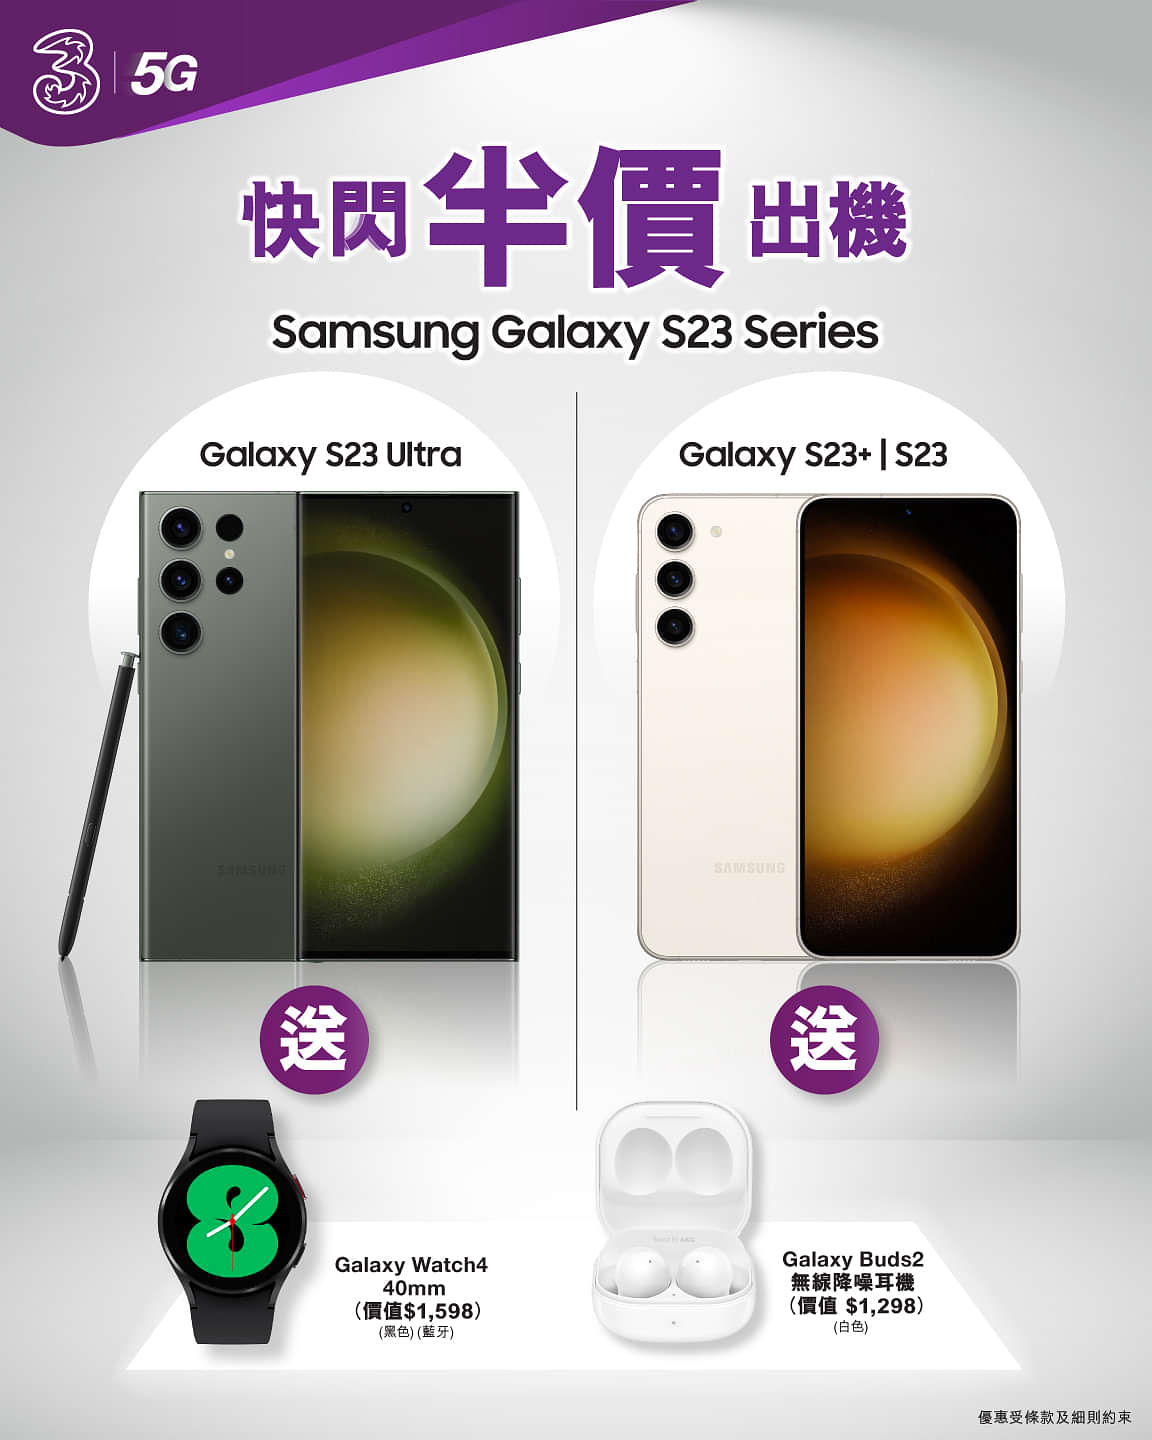 【#Samsung】Galaxy S23 Series快閃限定 半價出機
銀河系旗艦機王Samsung Galaxy S23優惠突襲！今次快閃半價，絕對係入手呢部2億像素傳奇手機嘅最佳時機，期間仲加送Galaxy Watch4智能手錶^或